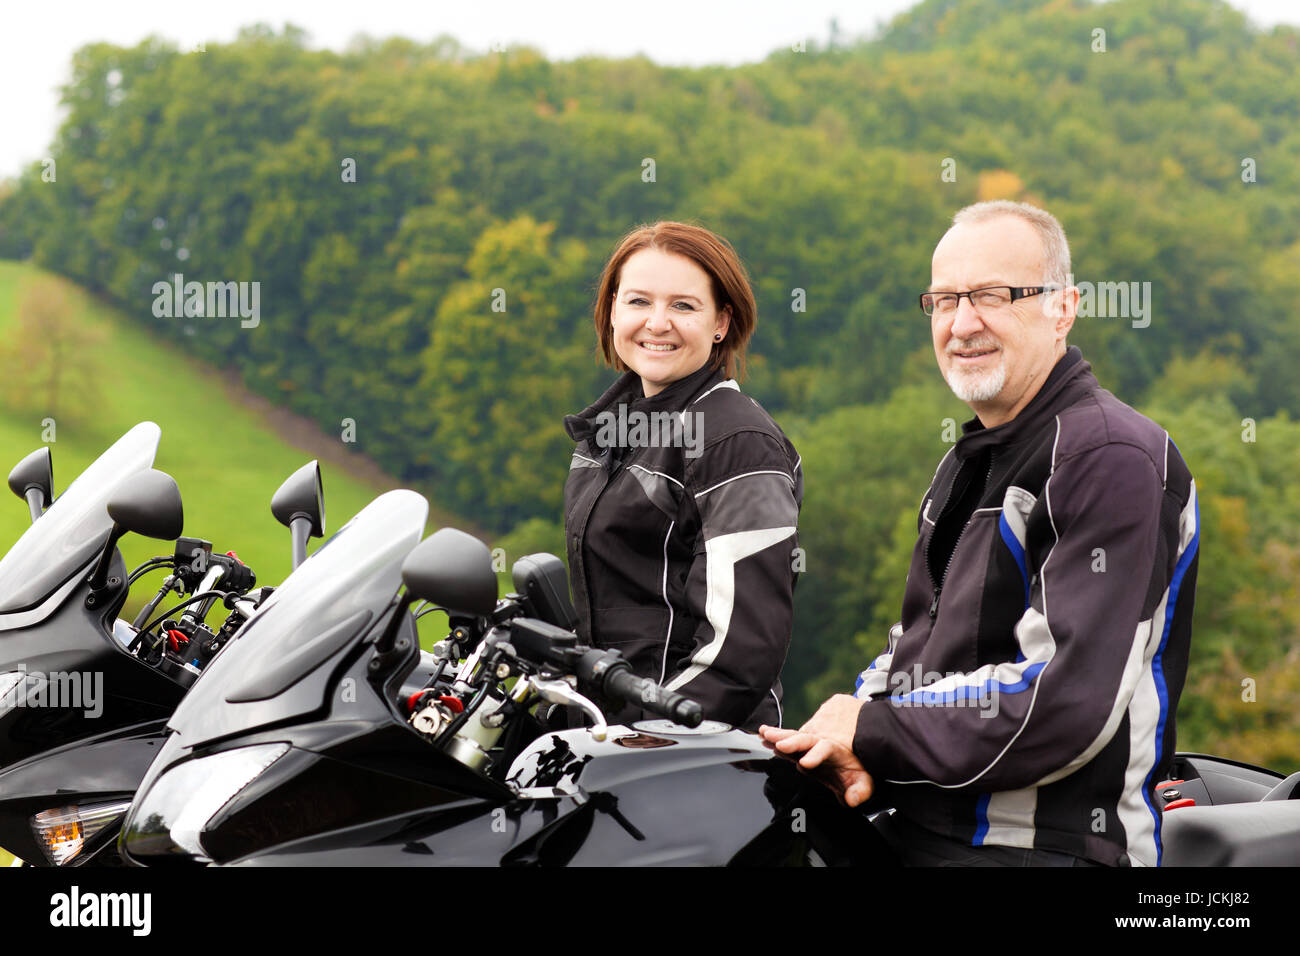 Zwei Motorradfahrer glücklich sitzen auf dem Motorrad Foto Stock